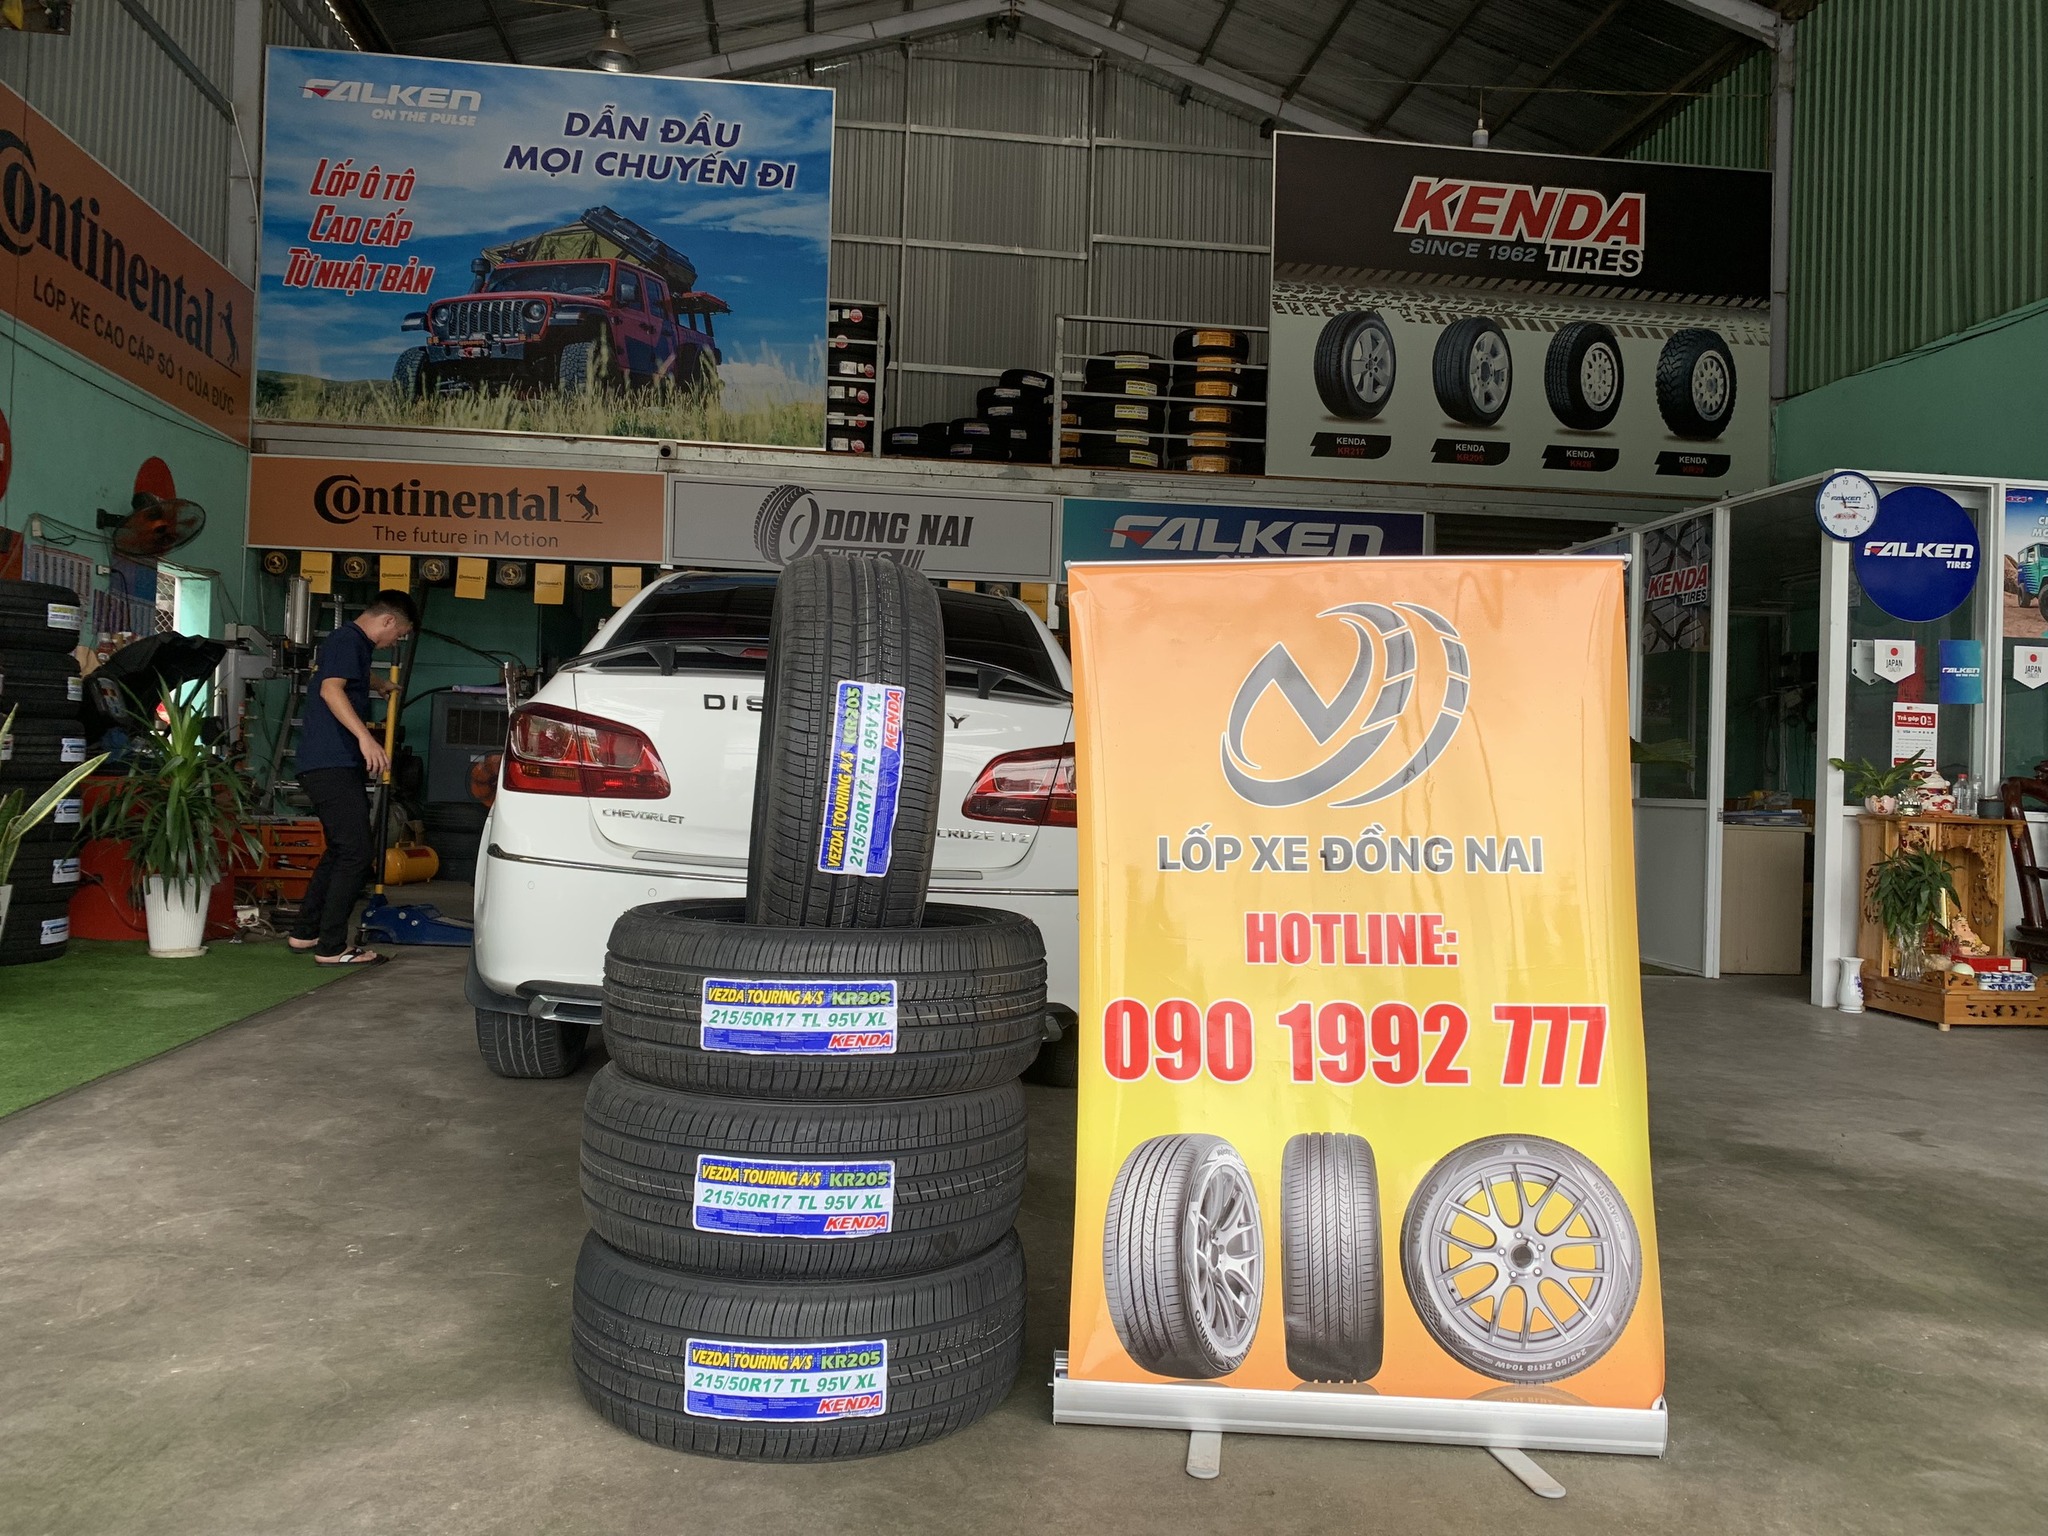 TƯ VẤN : Thay lốp xe Chevrolet Cruze ở Biên Hoà, Đồng Nai.